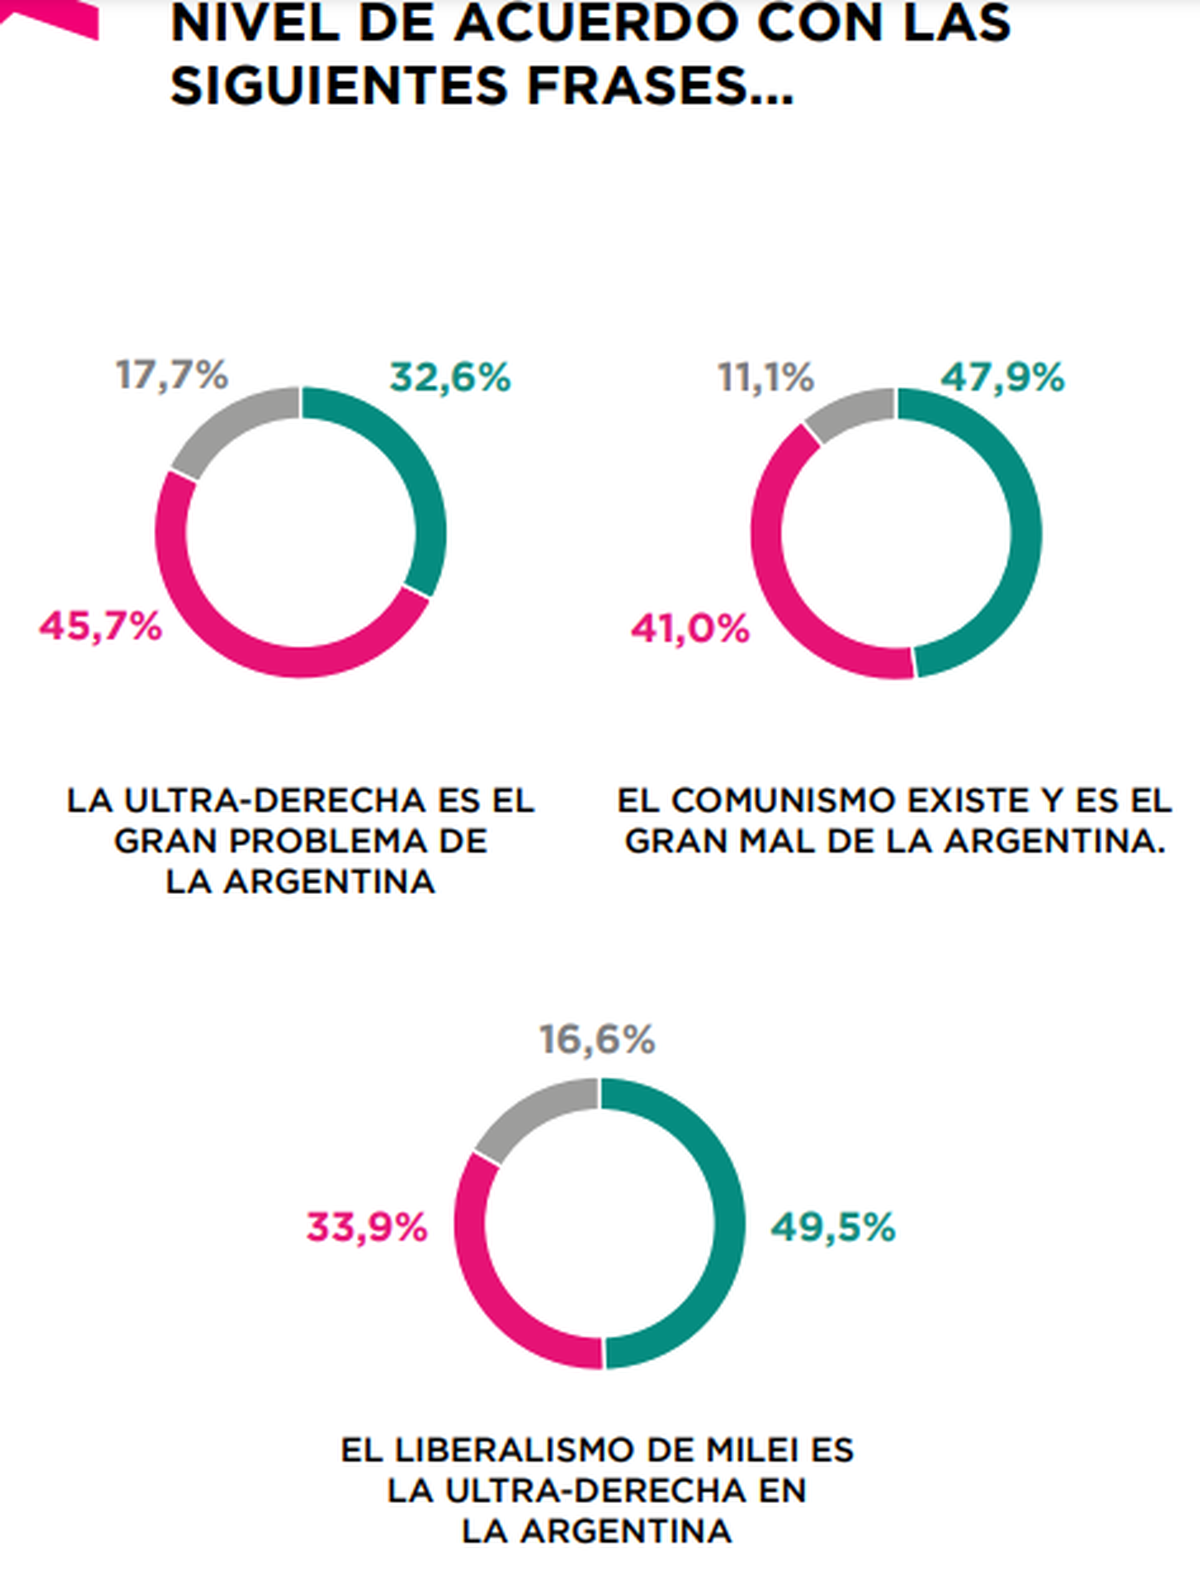 Un 48% en Argentina cree que el comunismo est&aacute; representado y es el gran mal en Argentina.